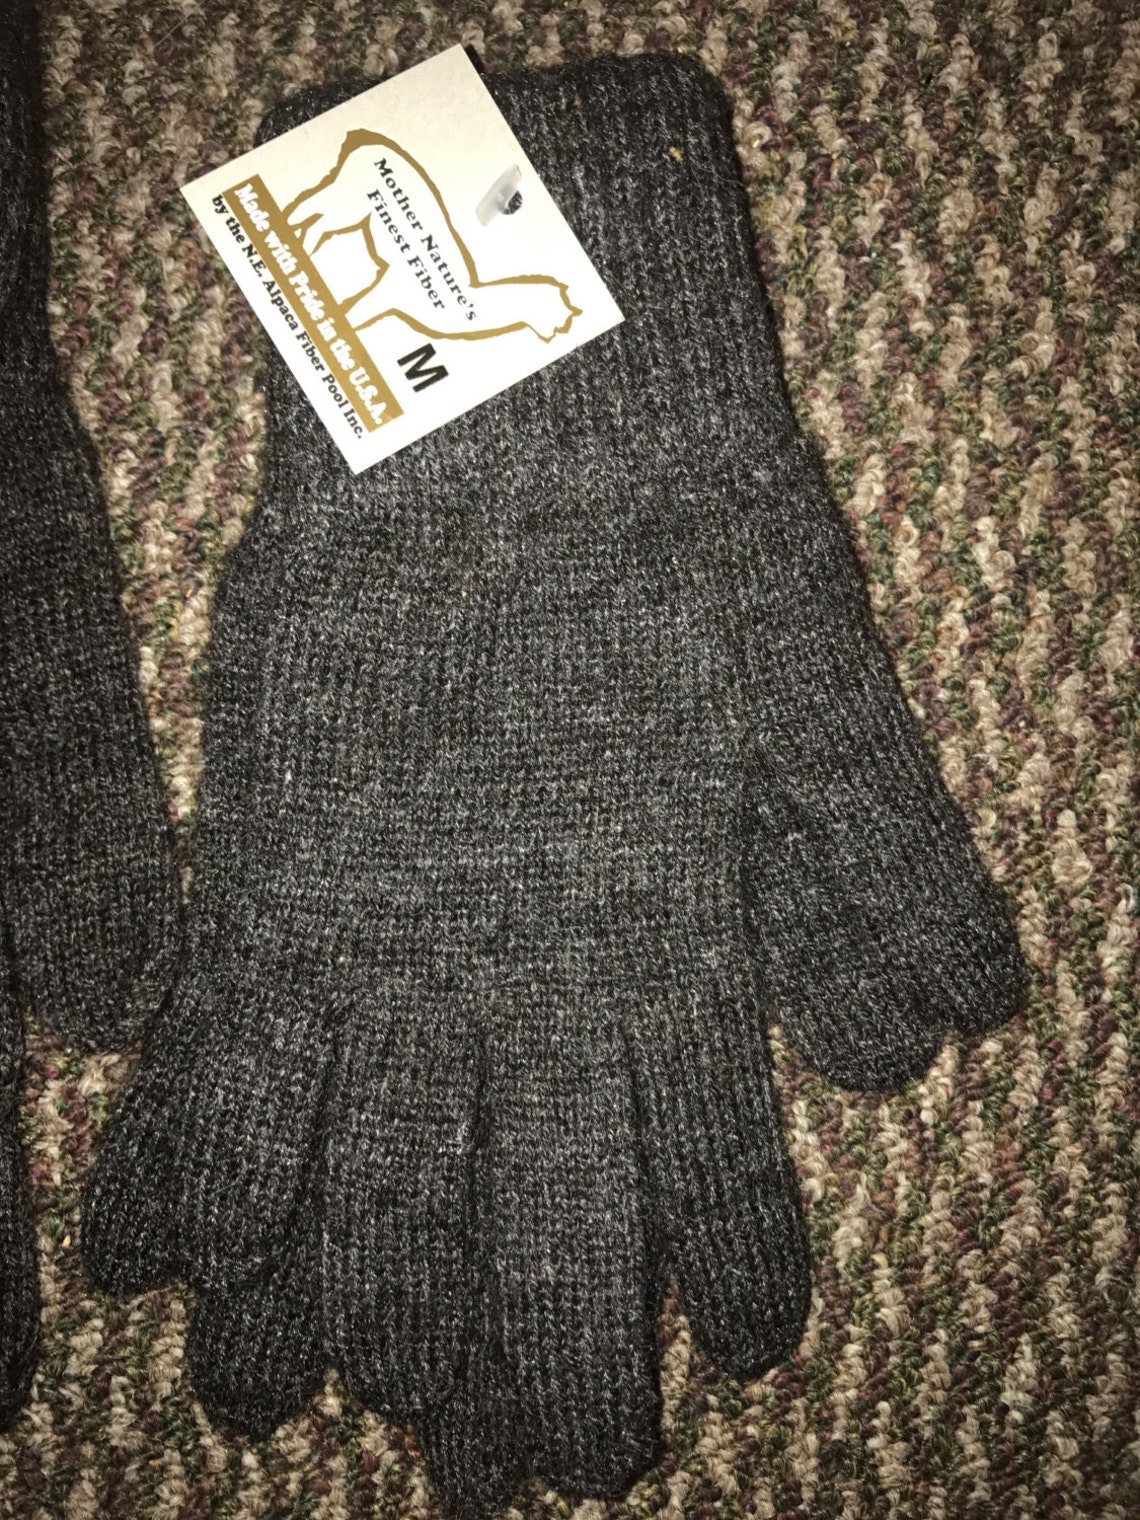 Alpaca gloves soft warm gloves Winter must haves Alpaca | Etsy